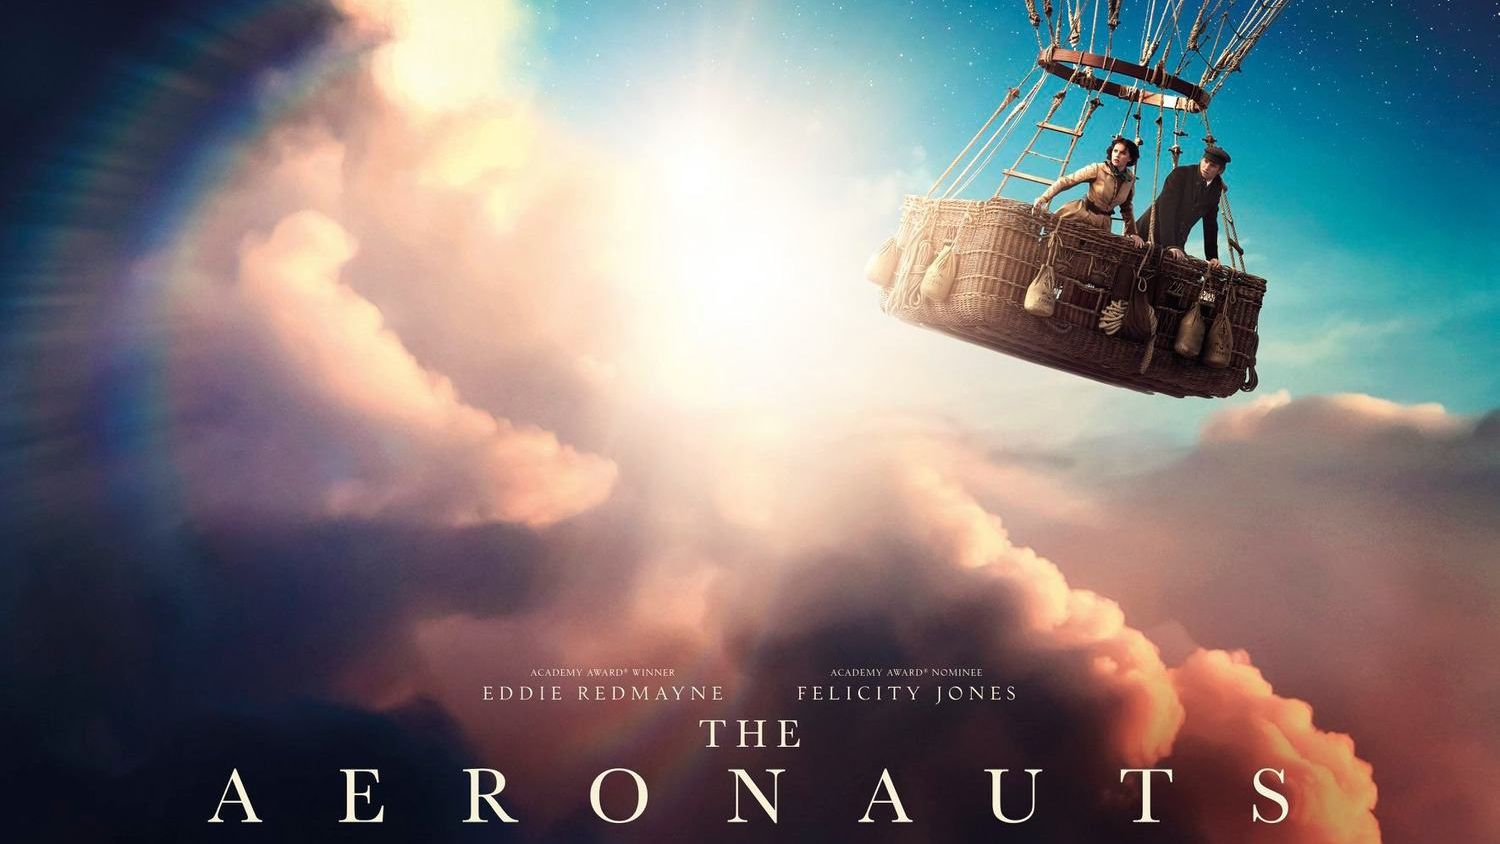 The Aeronauts movie poster